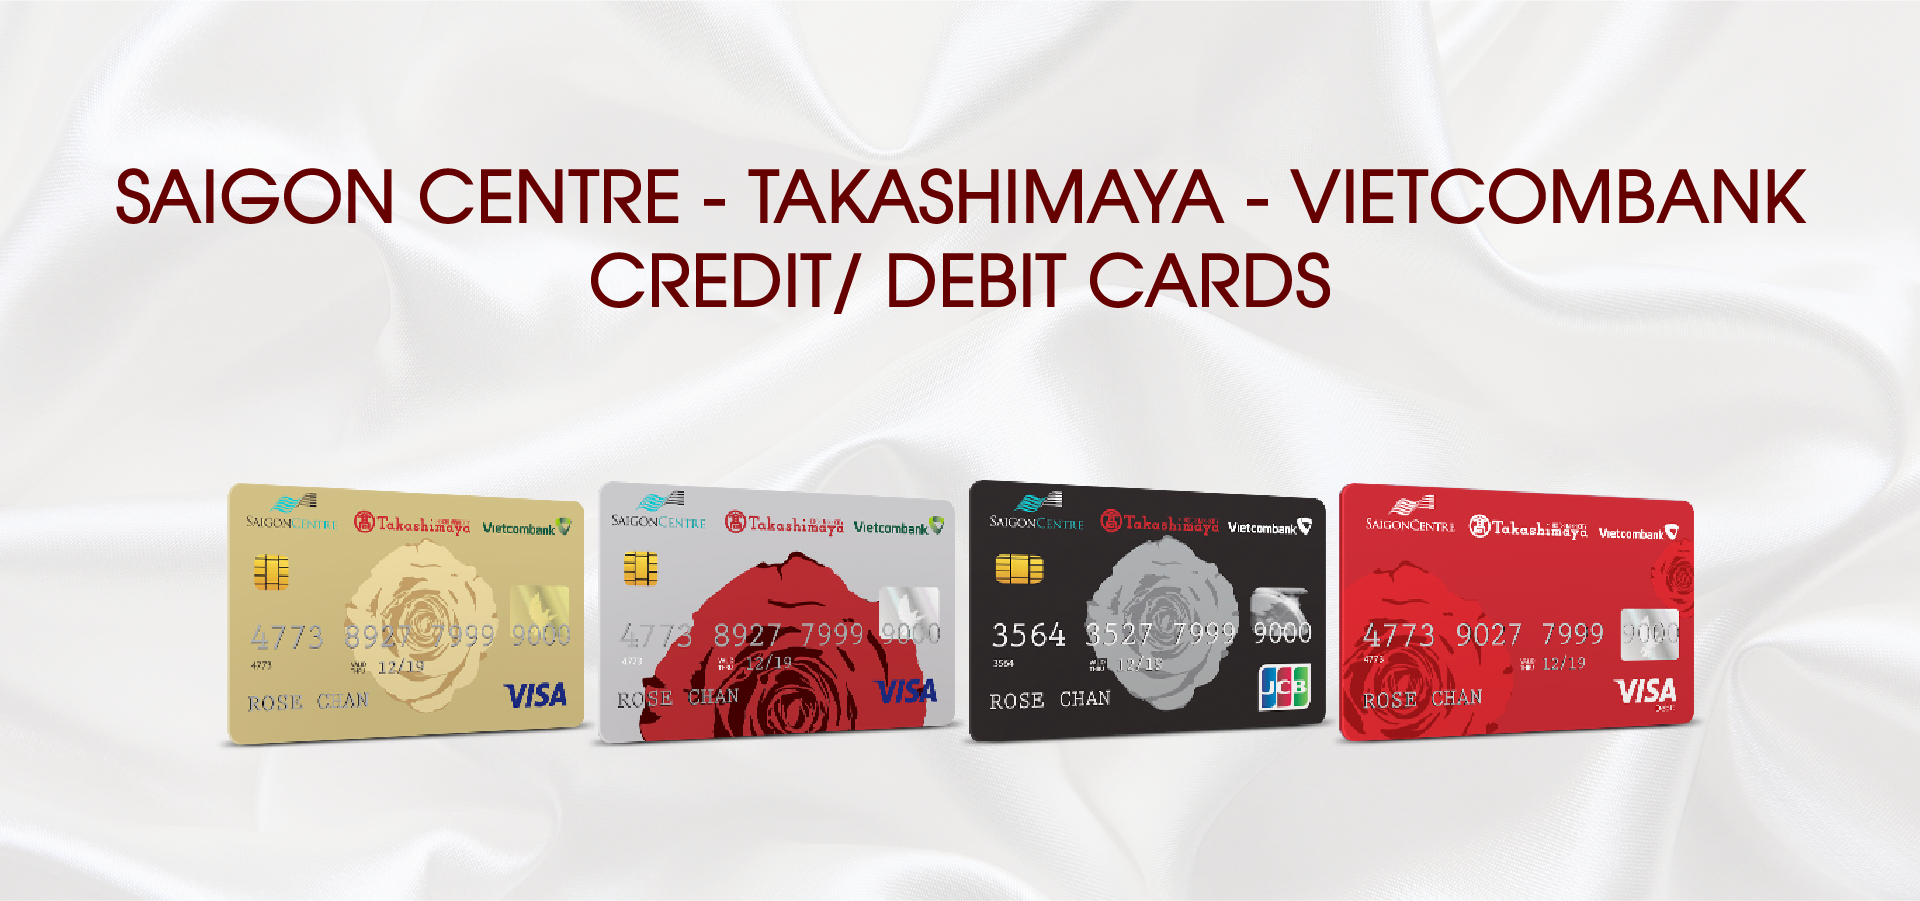 Saigon Centre - Takashimaya - Vietcombank credit/debit cards